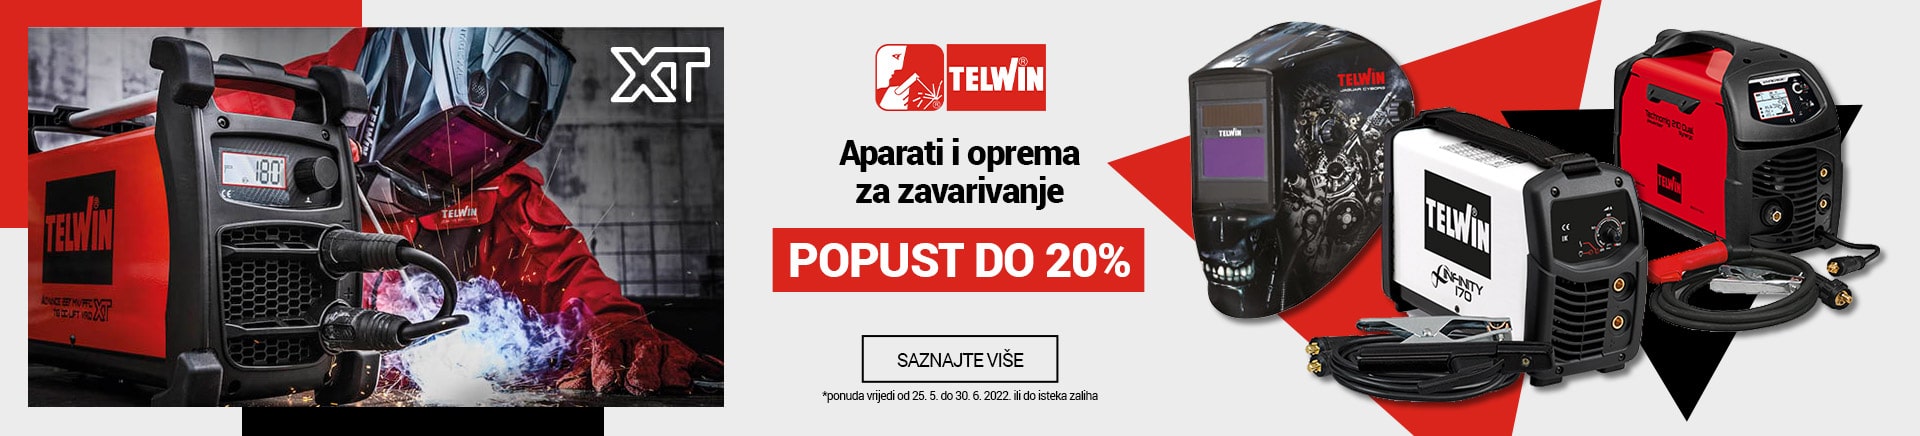 Telwin - Aparati i oprema za zavarivanje do 20% popusta